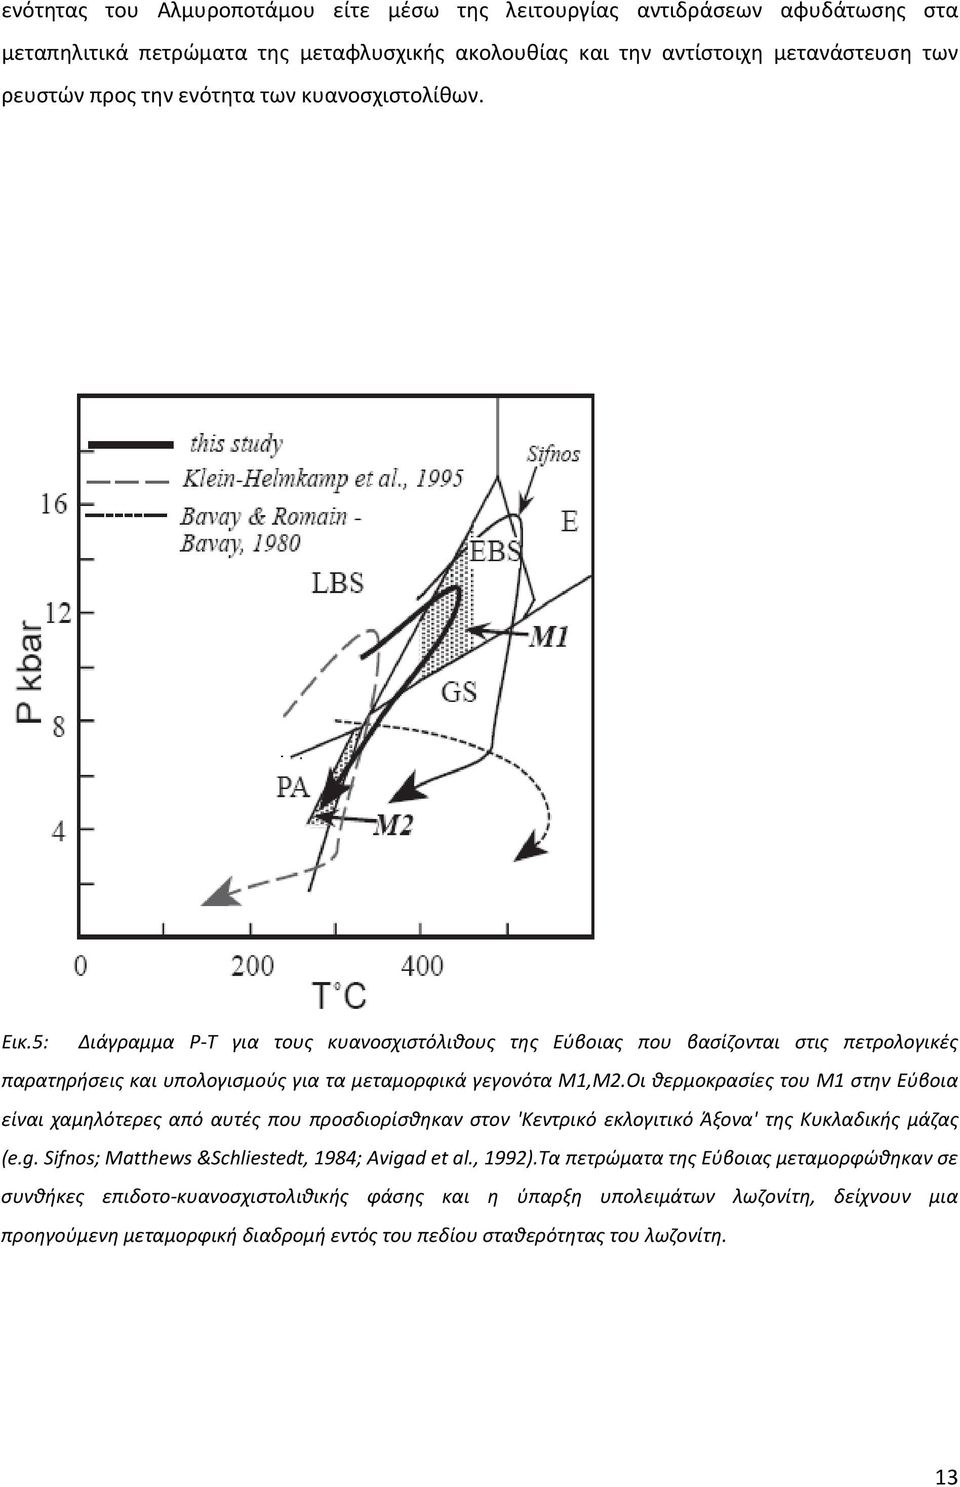 Οι θερμοκρασίες του Μ1 στην Εύβοια είναι χαμηλότερες από αυτές που προσδιορίσθηκαν στον 'Κεντρικό εκλογιτικό Άξονα' της Κυκλαδικής μάζας (e.g. Sifnos; Matthews &Schliestedt, 1984; Avigad et al.